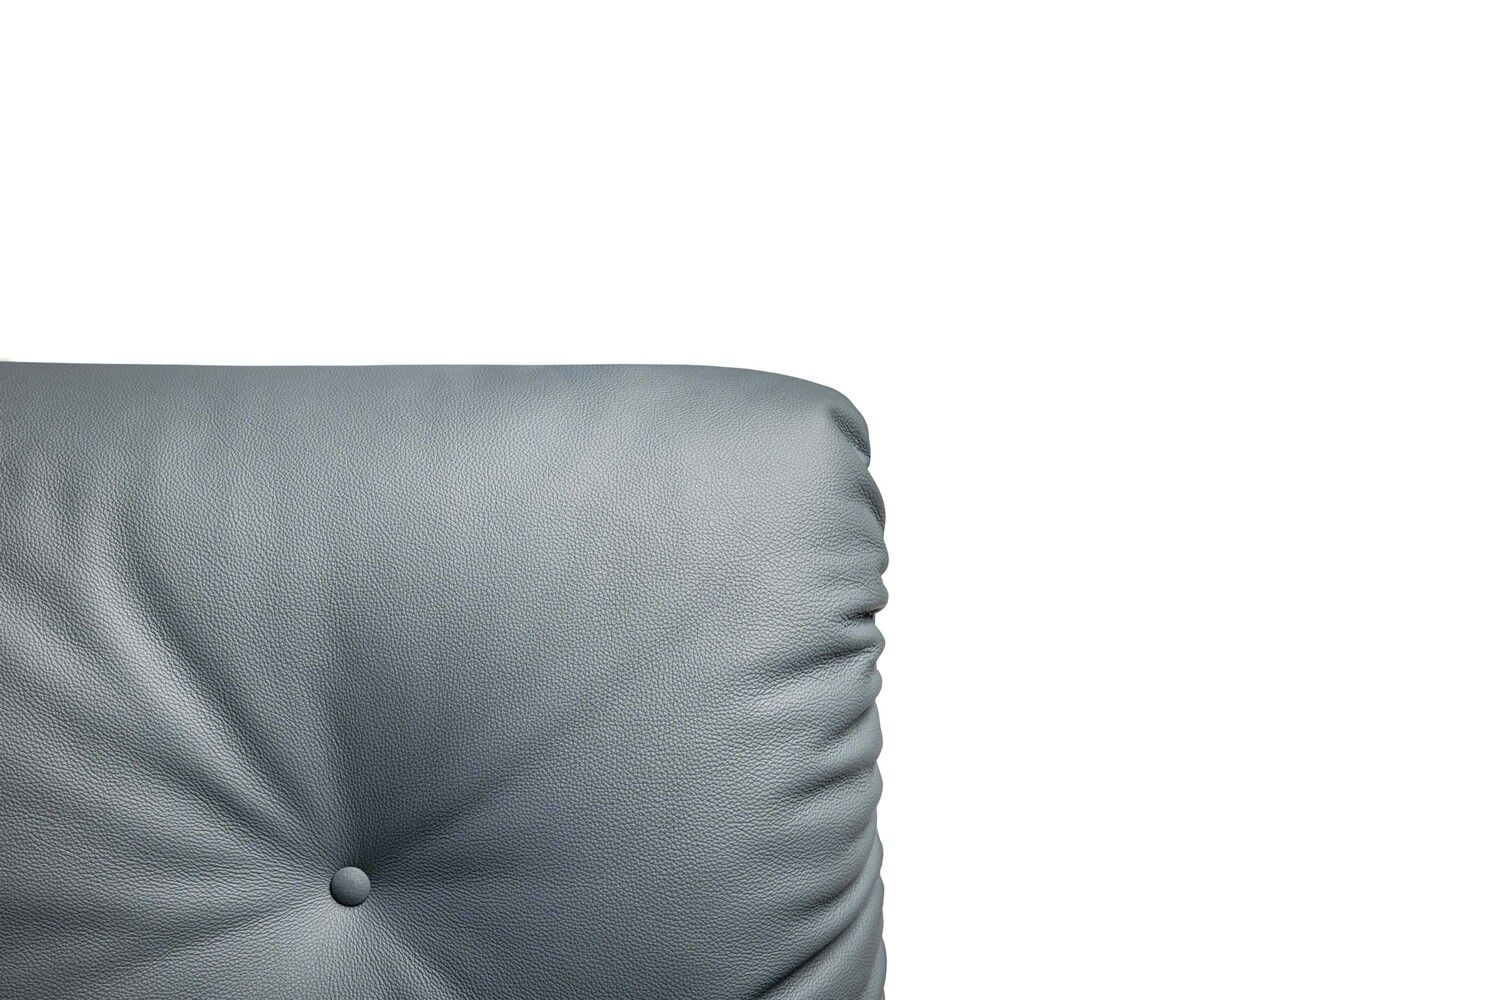 Overture est un fauteuil lounge conçu par Pierluigi Cerri et proposé par Peverelli.